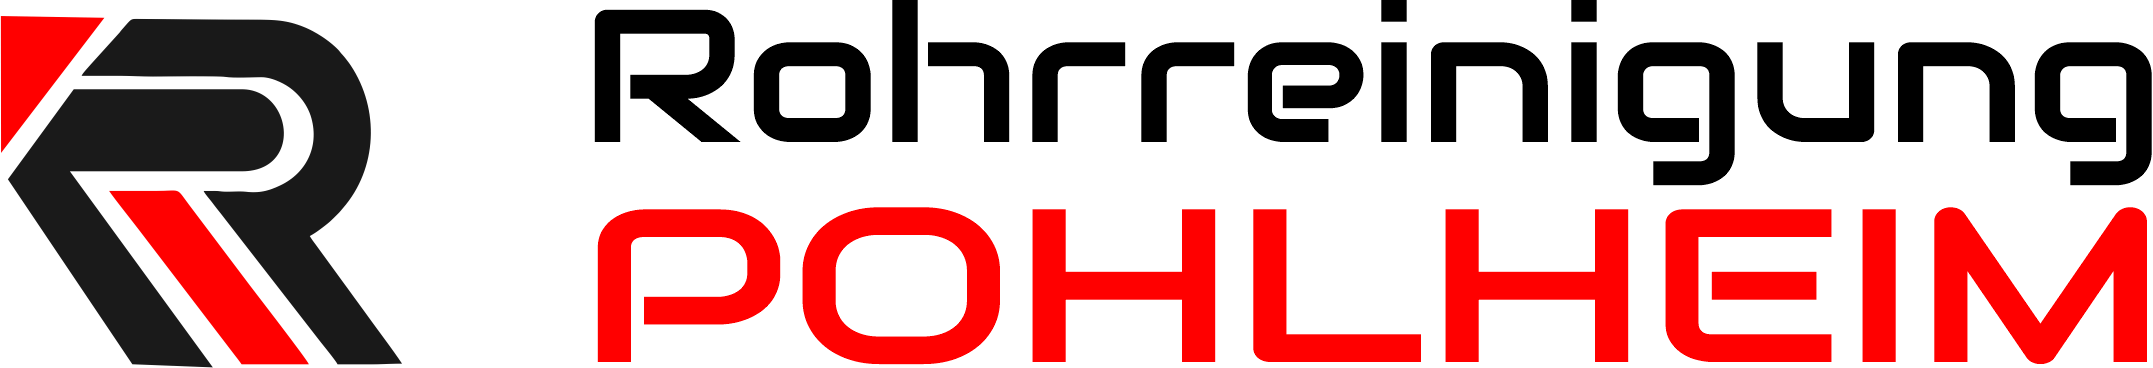 Rohrreinigung Pohlheim Logo